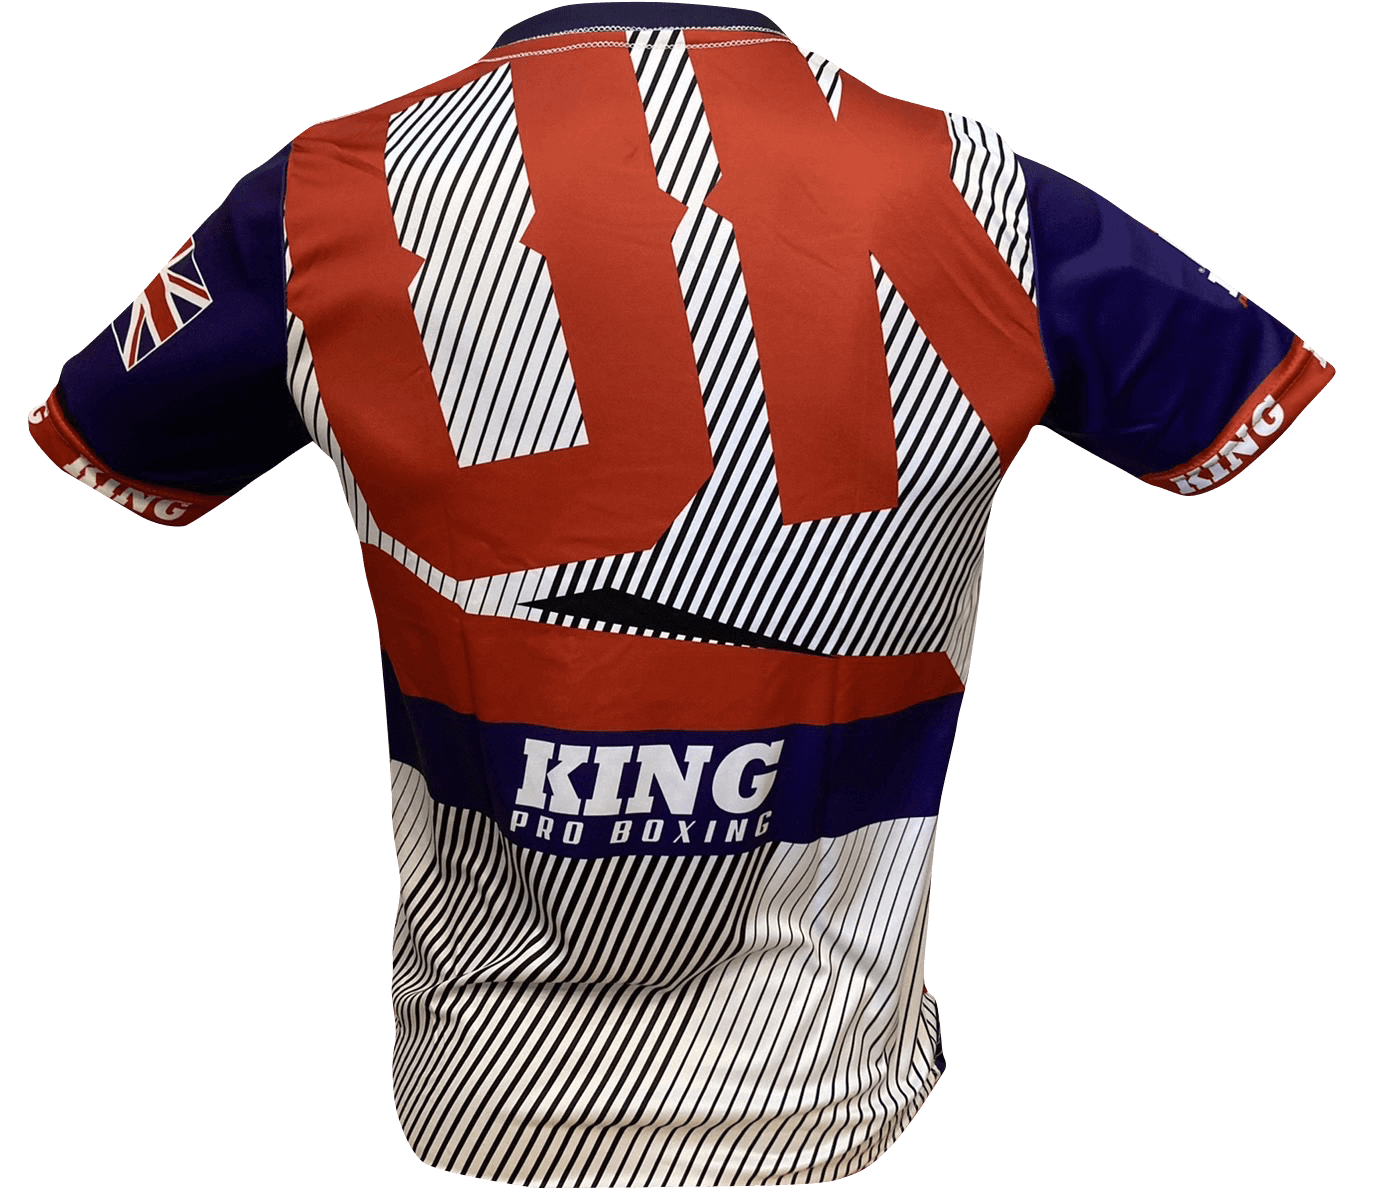 King Pro Boxing T-shirt UK King Pro Boxing